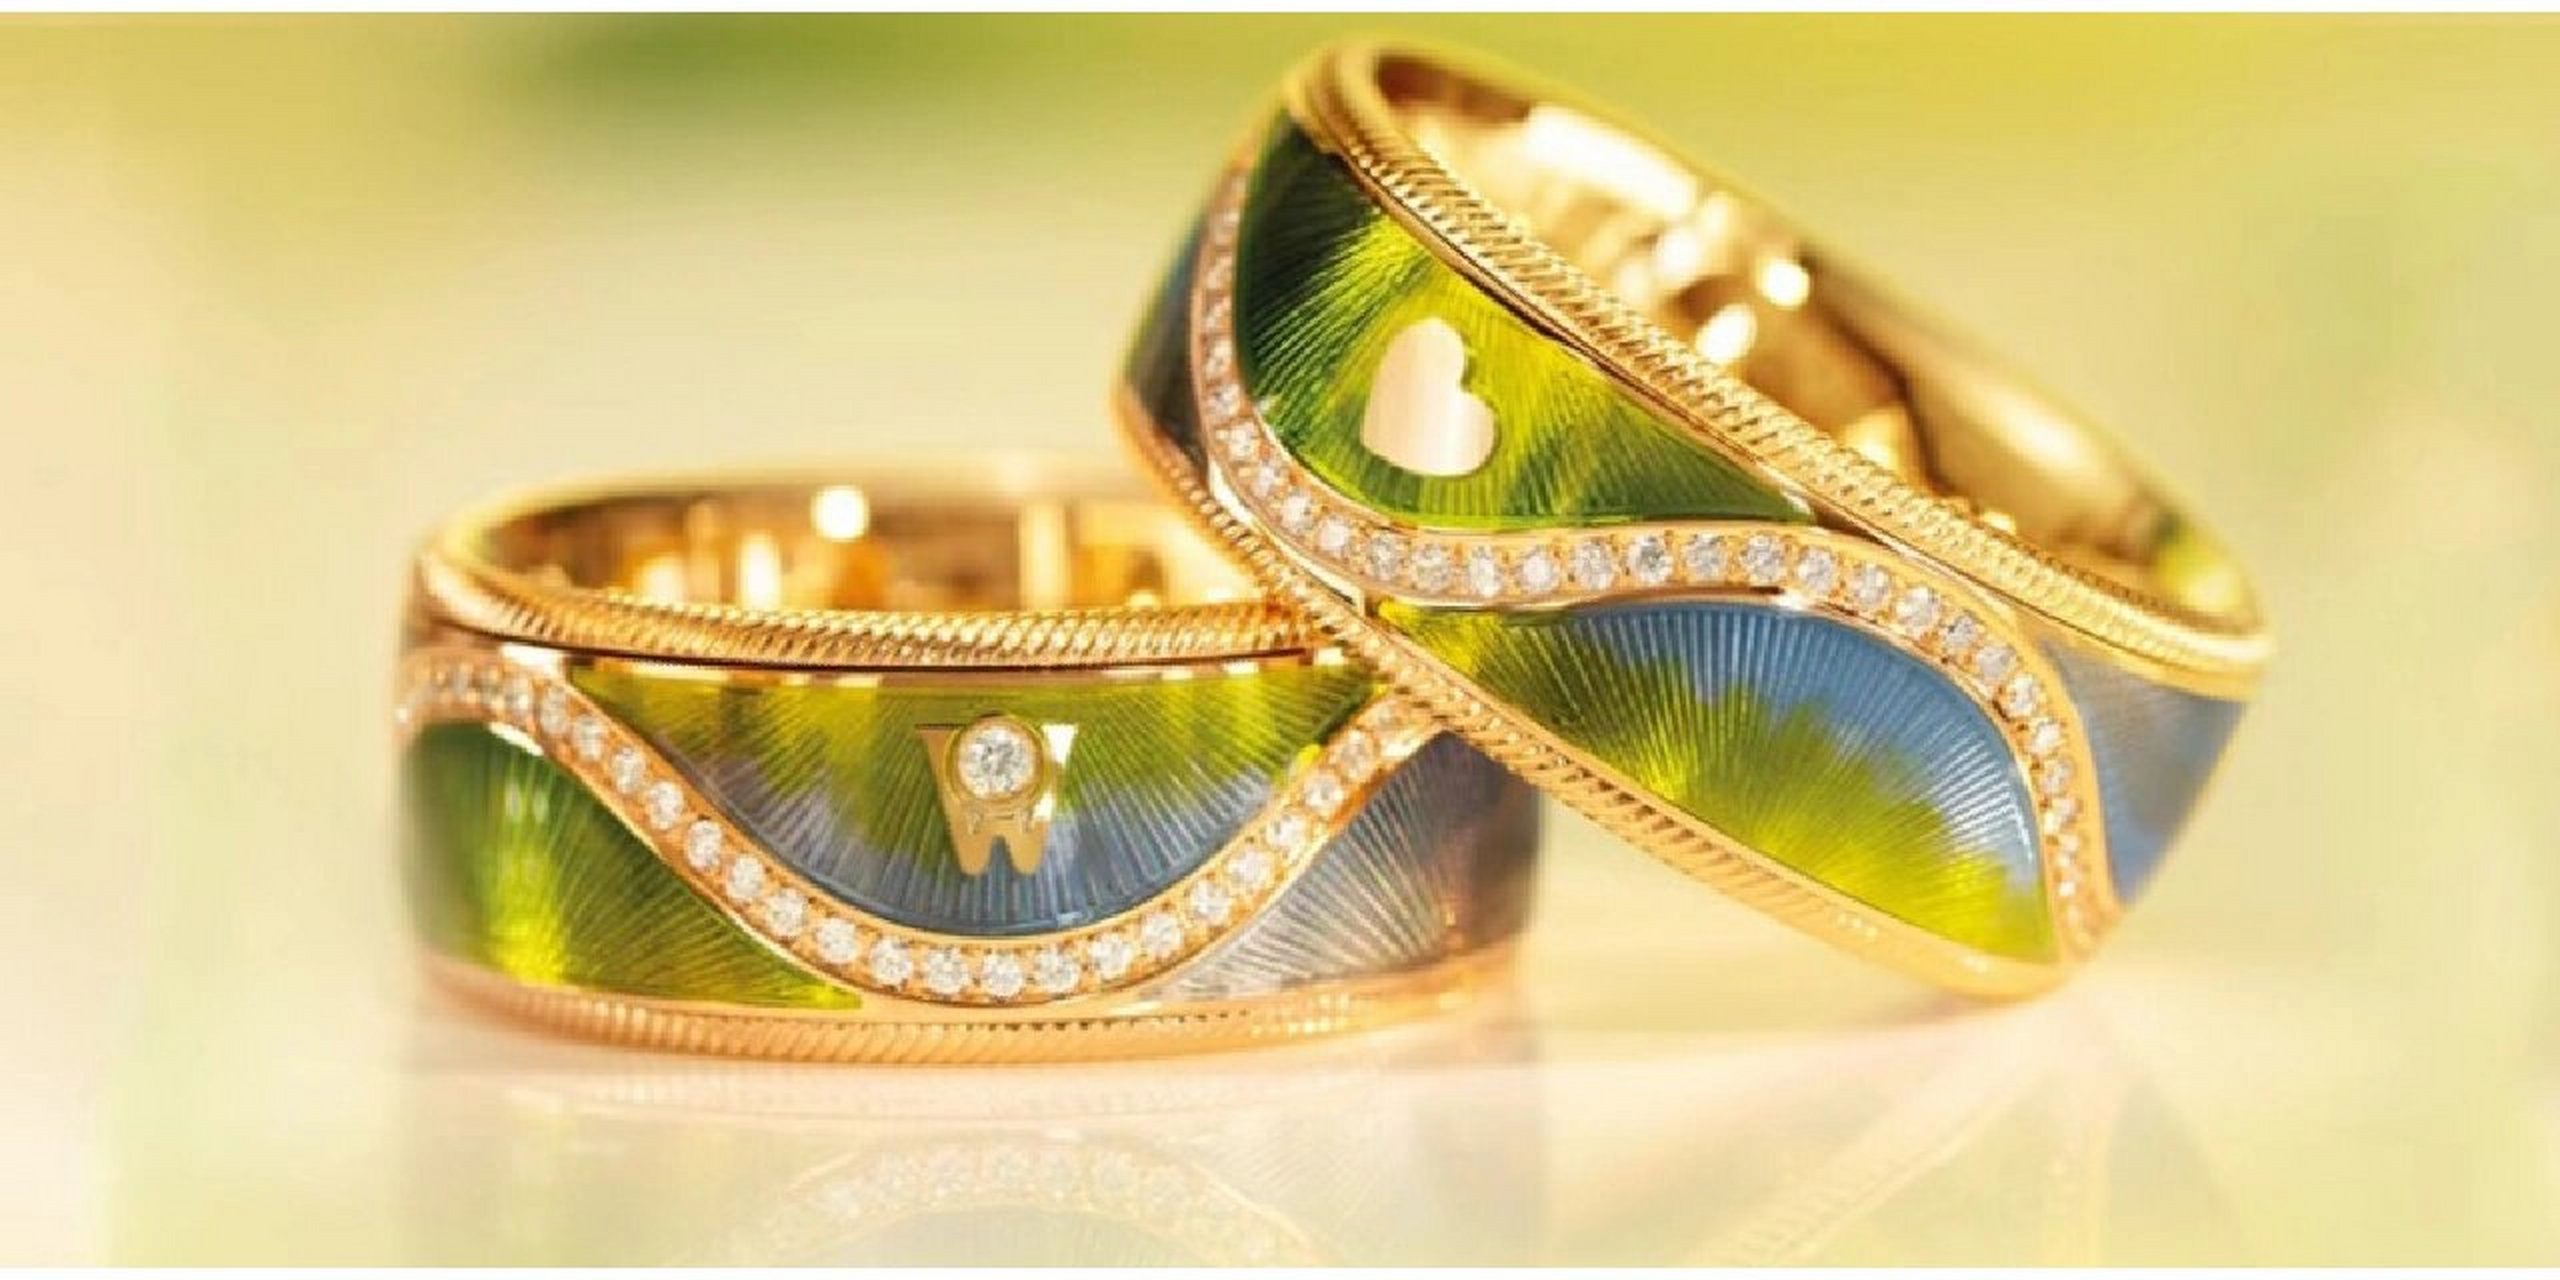 德国顶级珠宝品牌@华洛芙 wellendorff 130周年纪念款限量指环,每枚